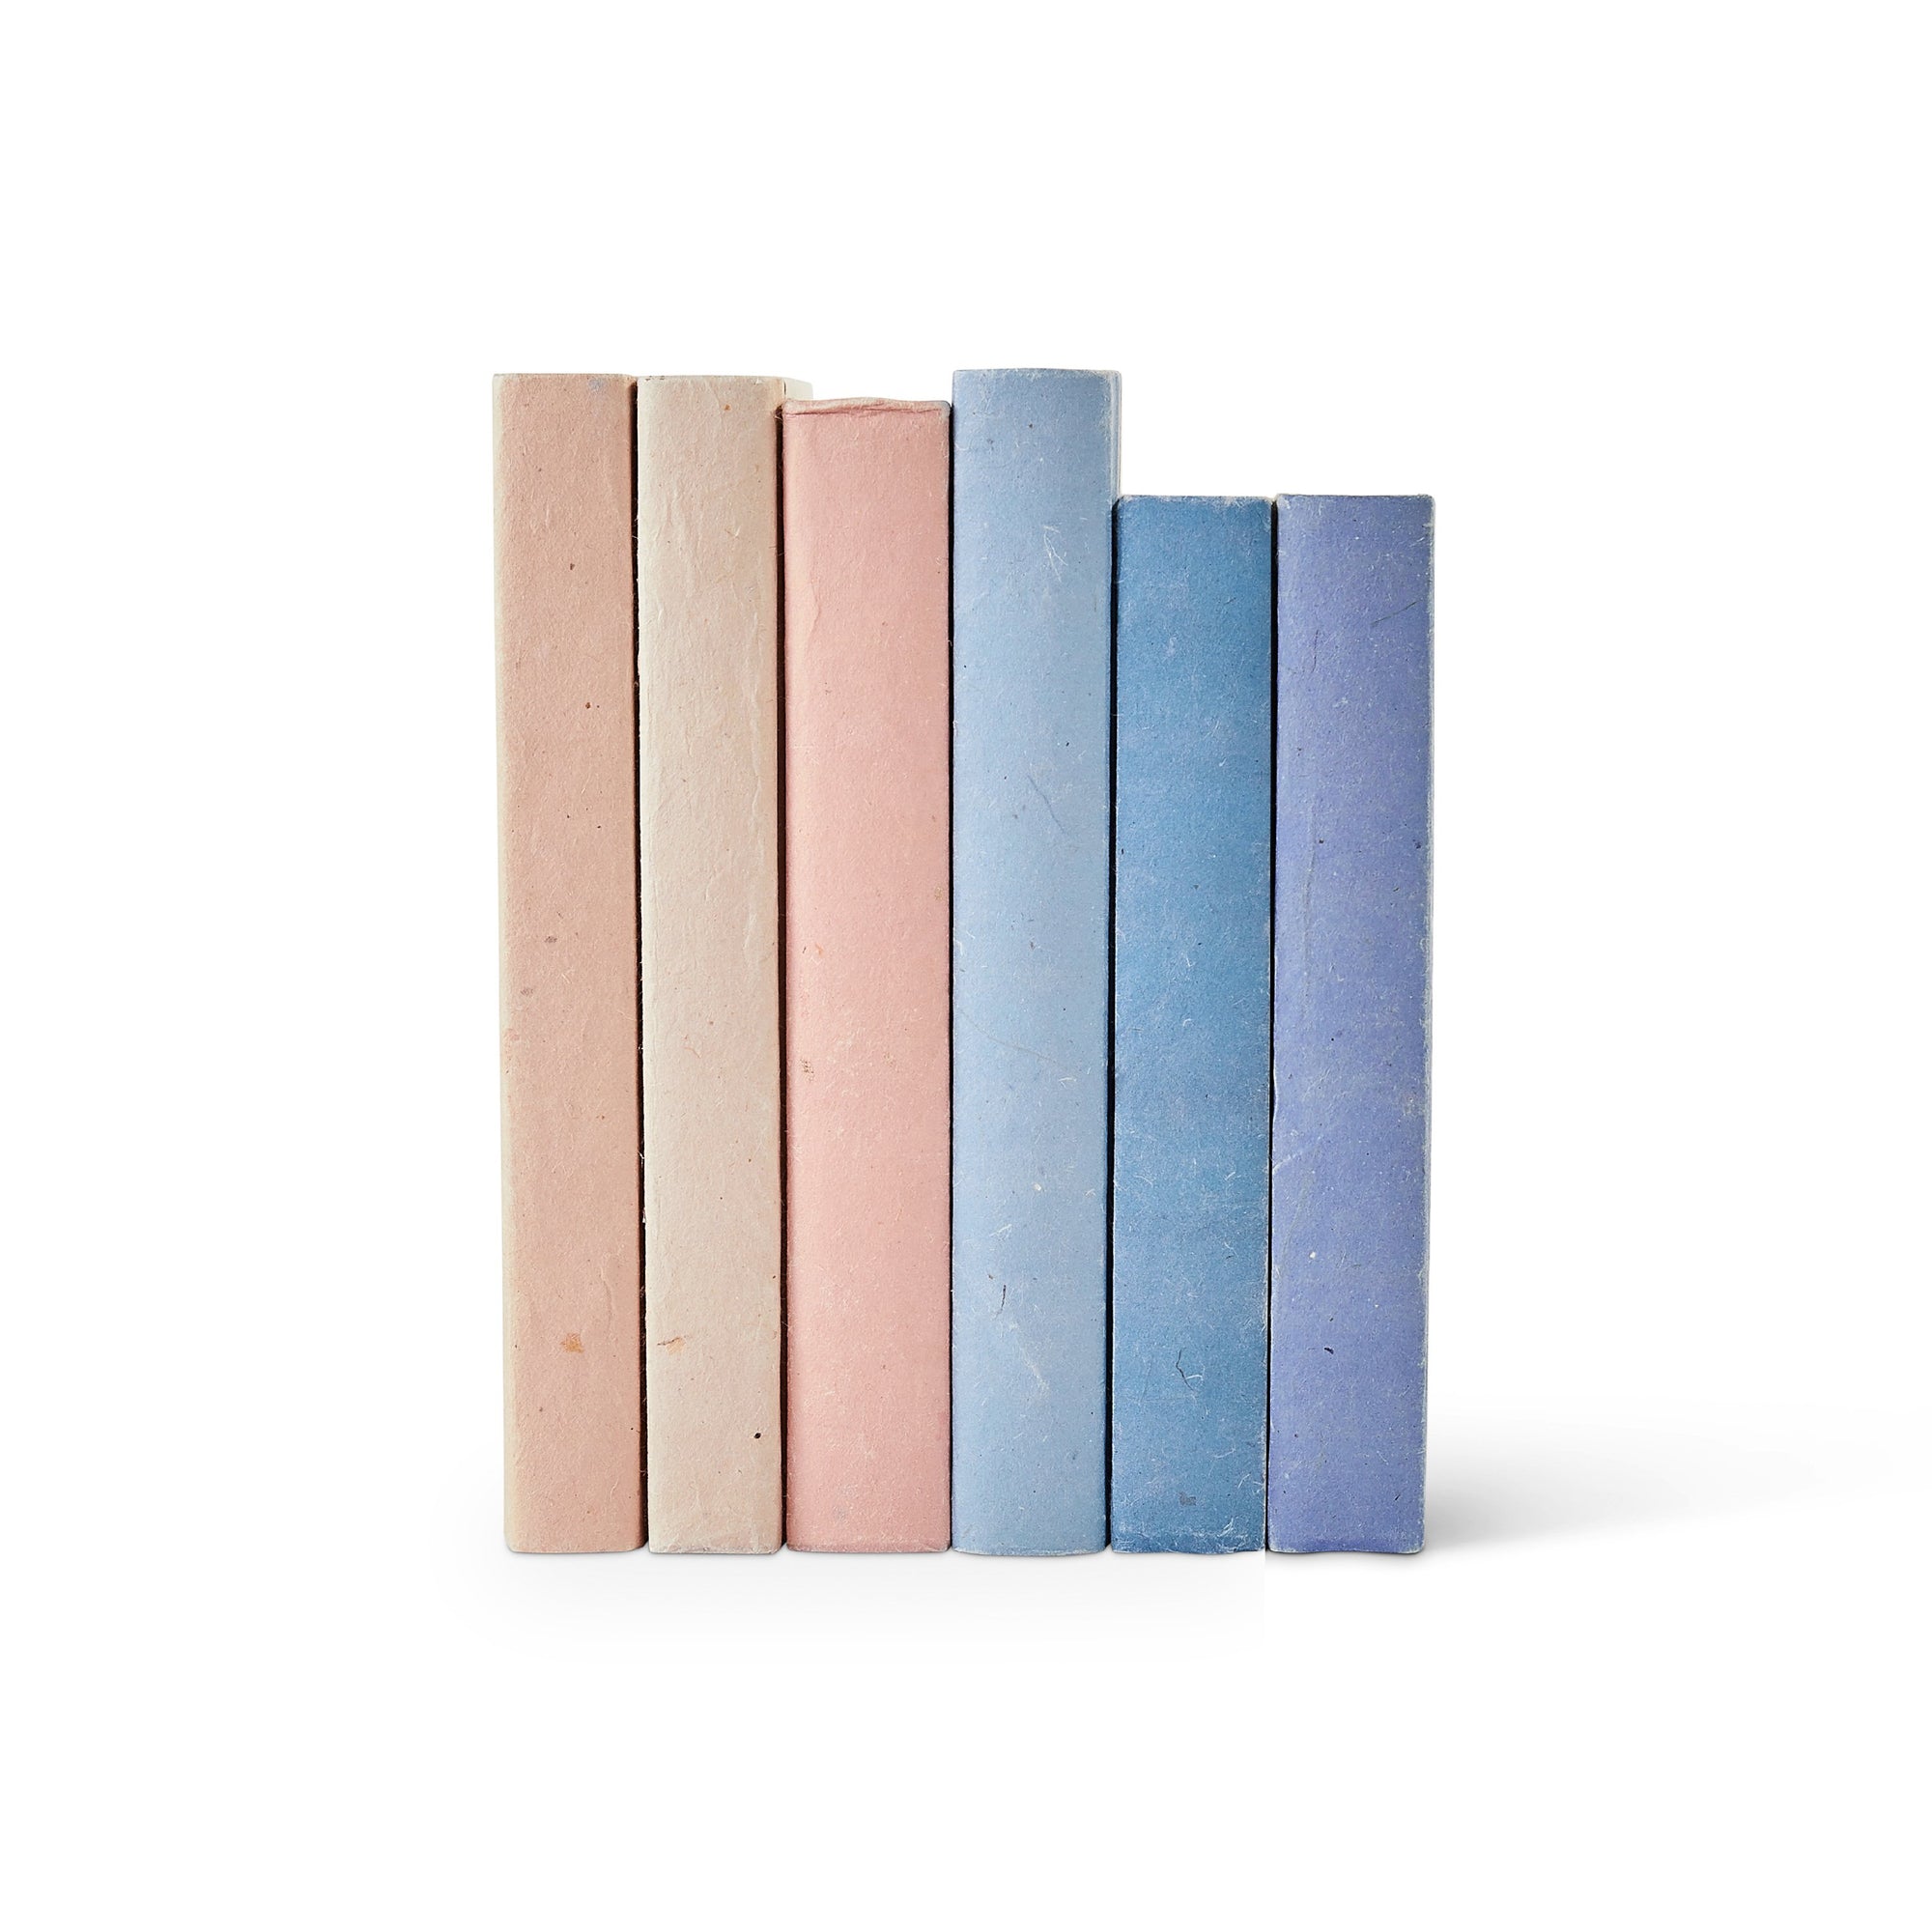 Peach Blush and Blue Parchment Decorative Book Sets